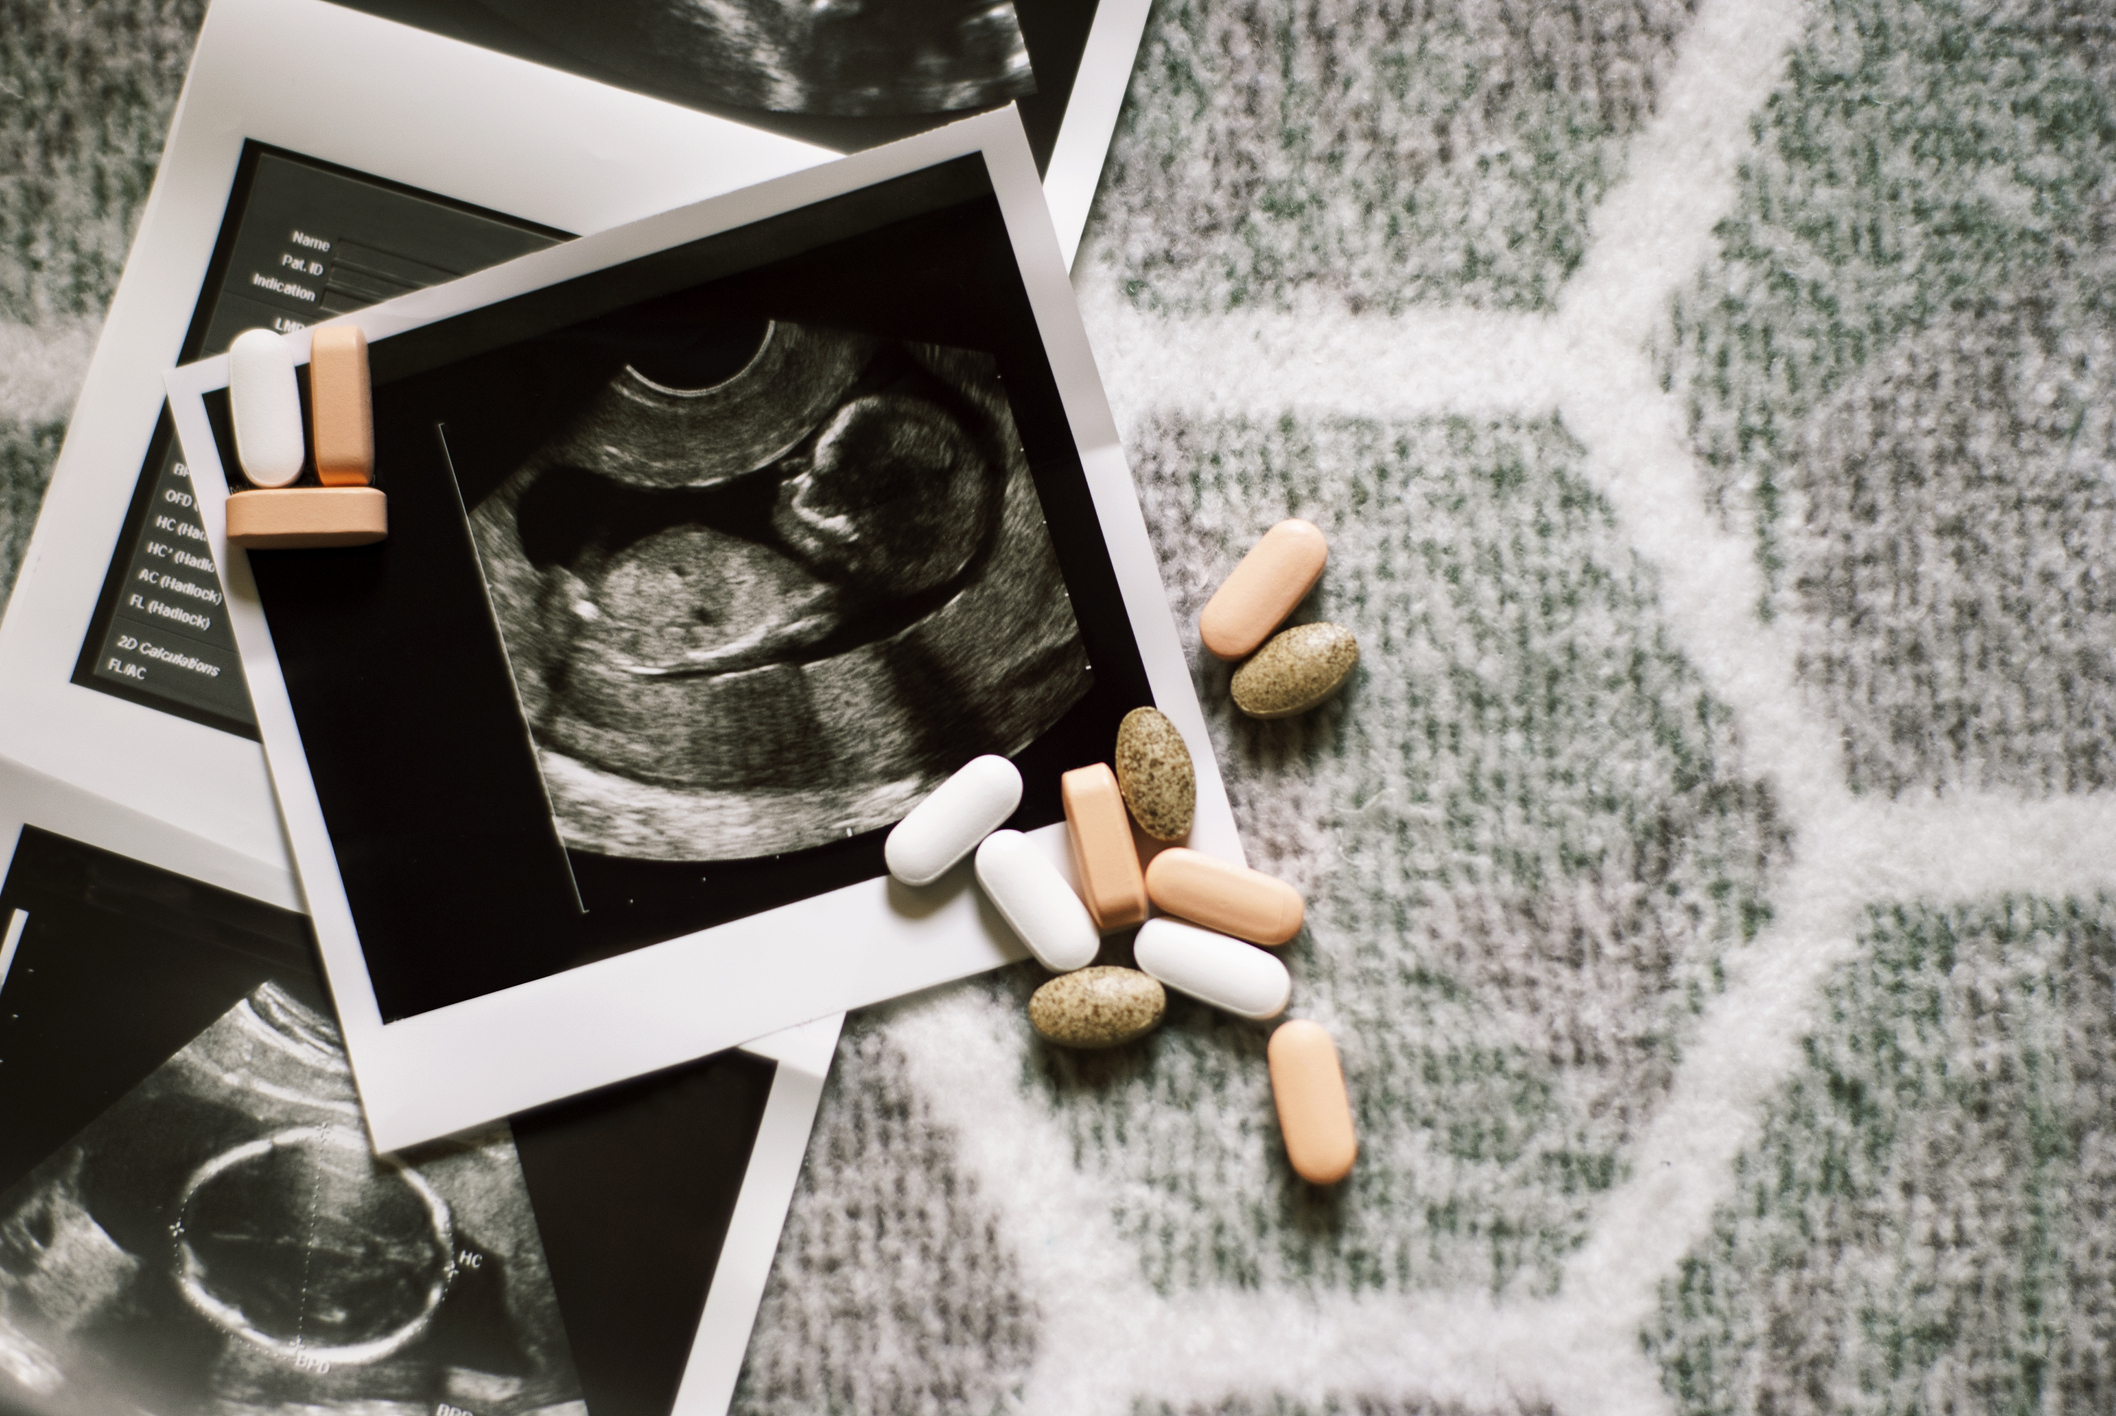 Některé léky užívané během těhotenství mohou poškodit vývoj plodu. Zdroj: Getty Images